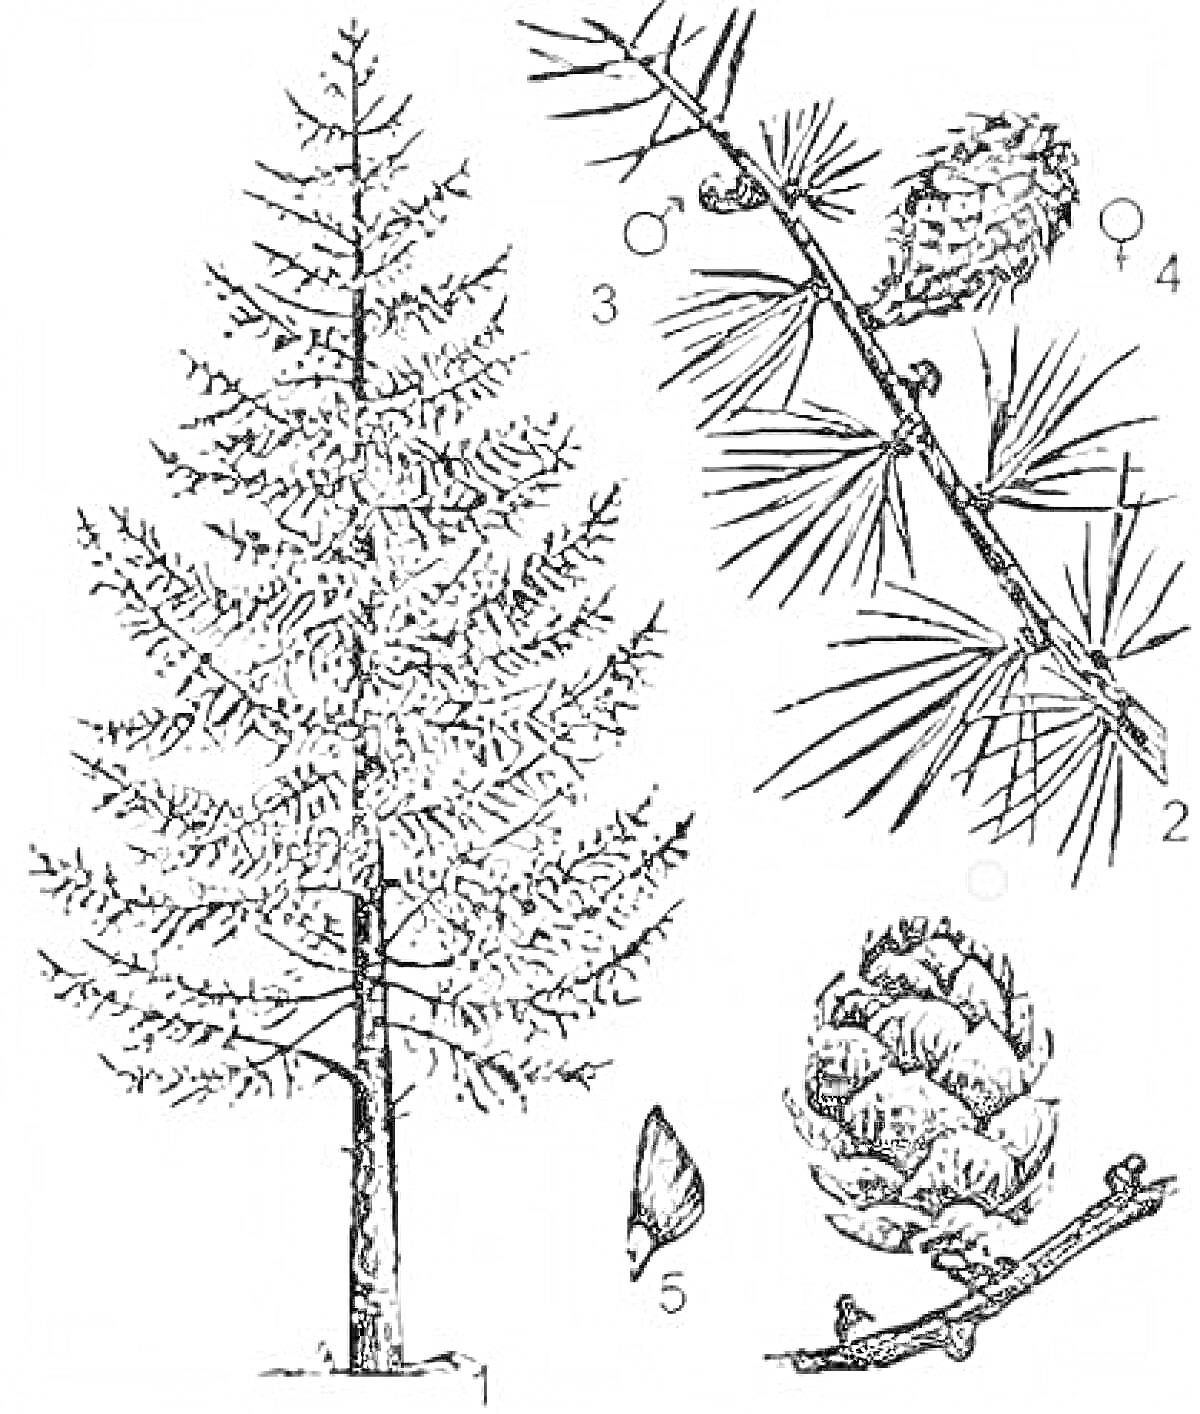 Раскраска Лиственница с изображением дерева, веток, мужских и женских шишек, иголок и семян